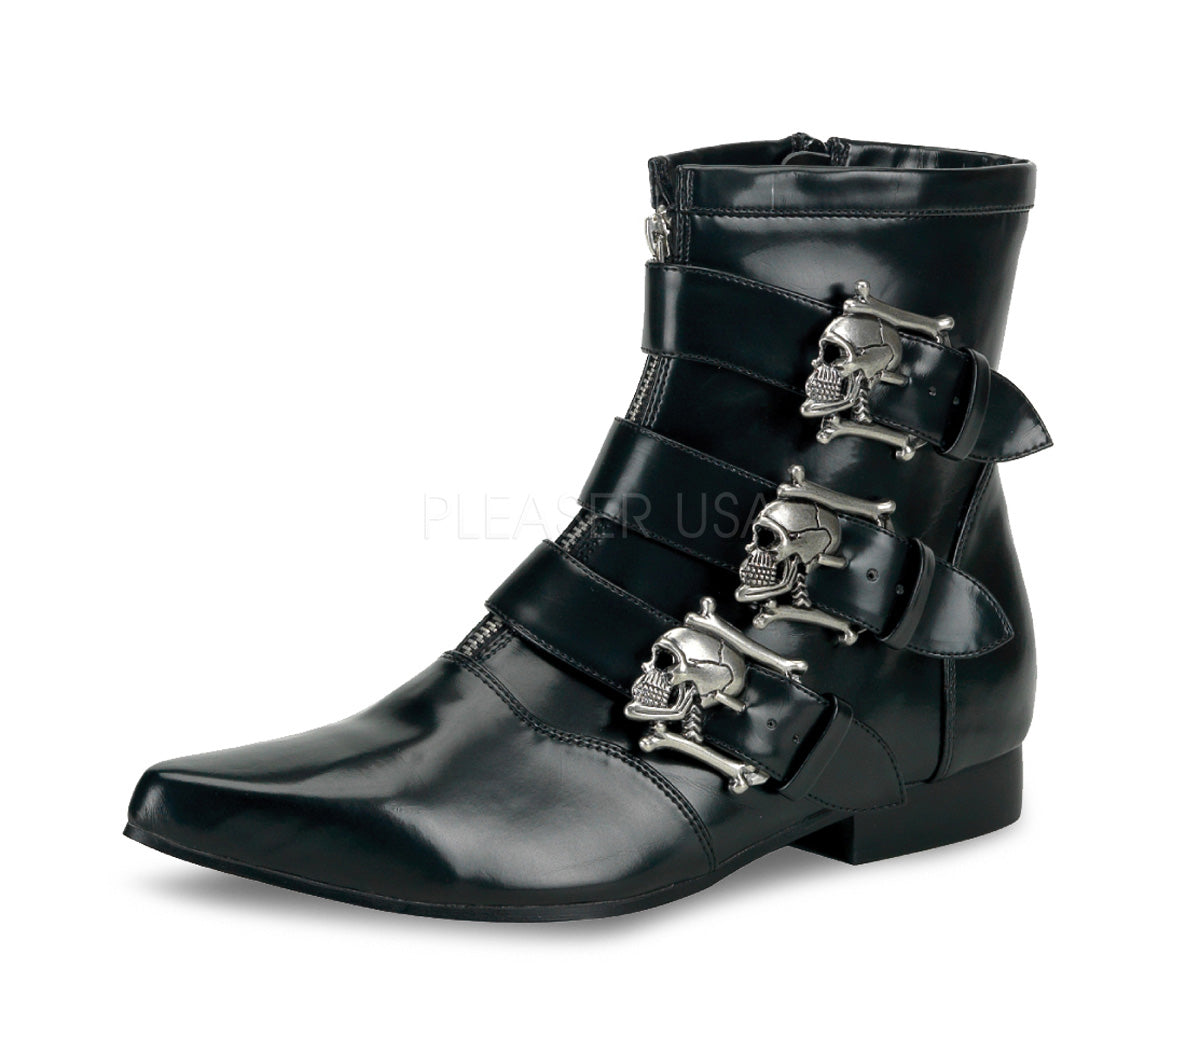 goth winklepicker boots